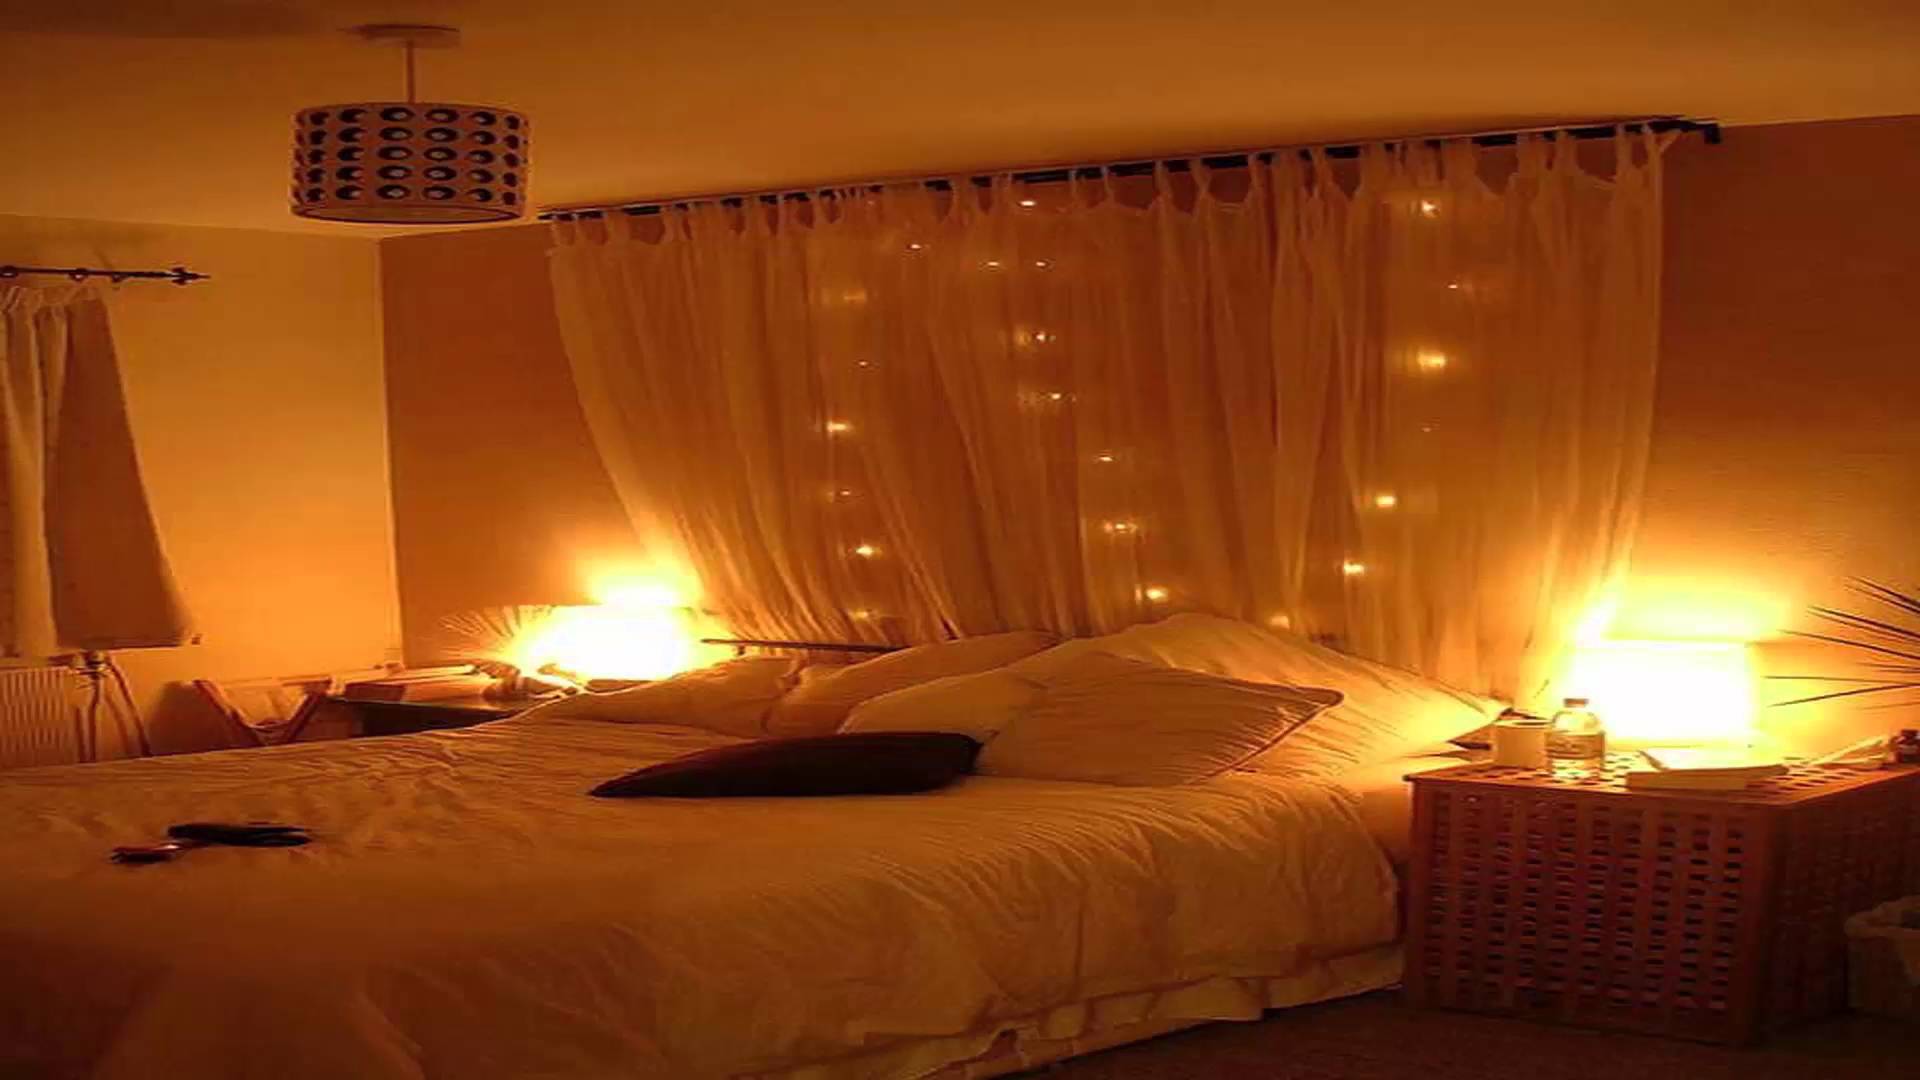 Брачная постель. Романтическая комната. Кровать для брачной ночи. Романтическая спальня. Свечи в спальне.